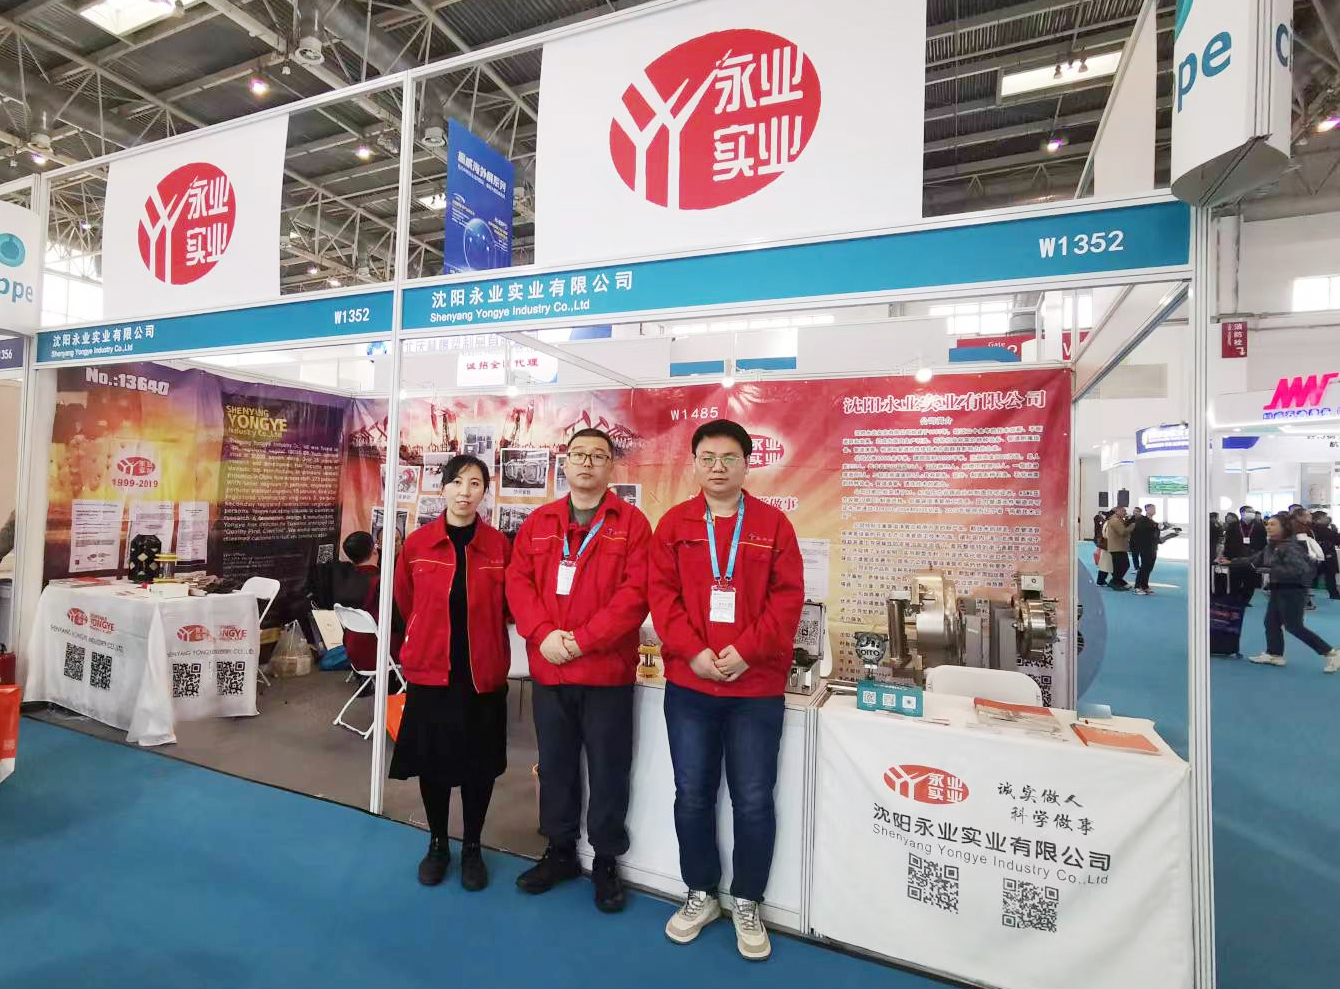 古天乐代言太阳集团城2018参展 第二十四届中国国际石油石化装备展览会